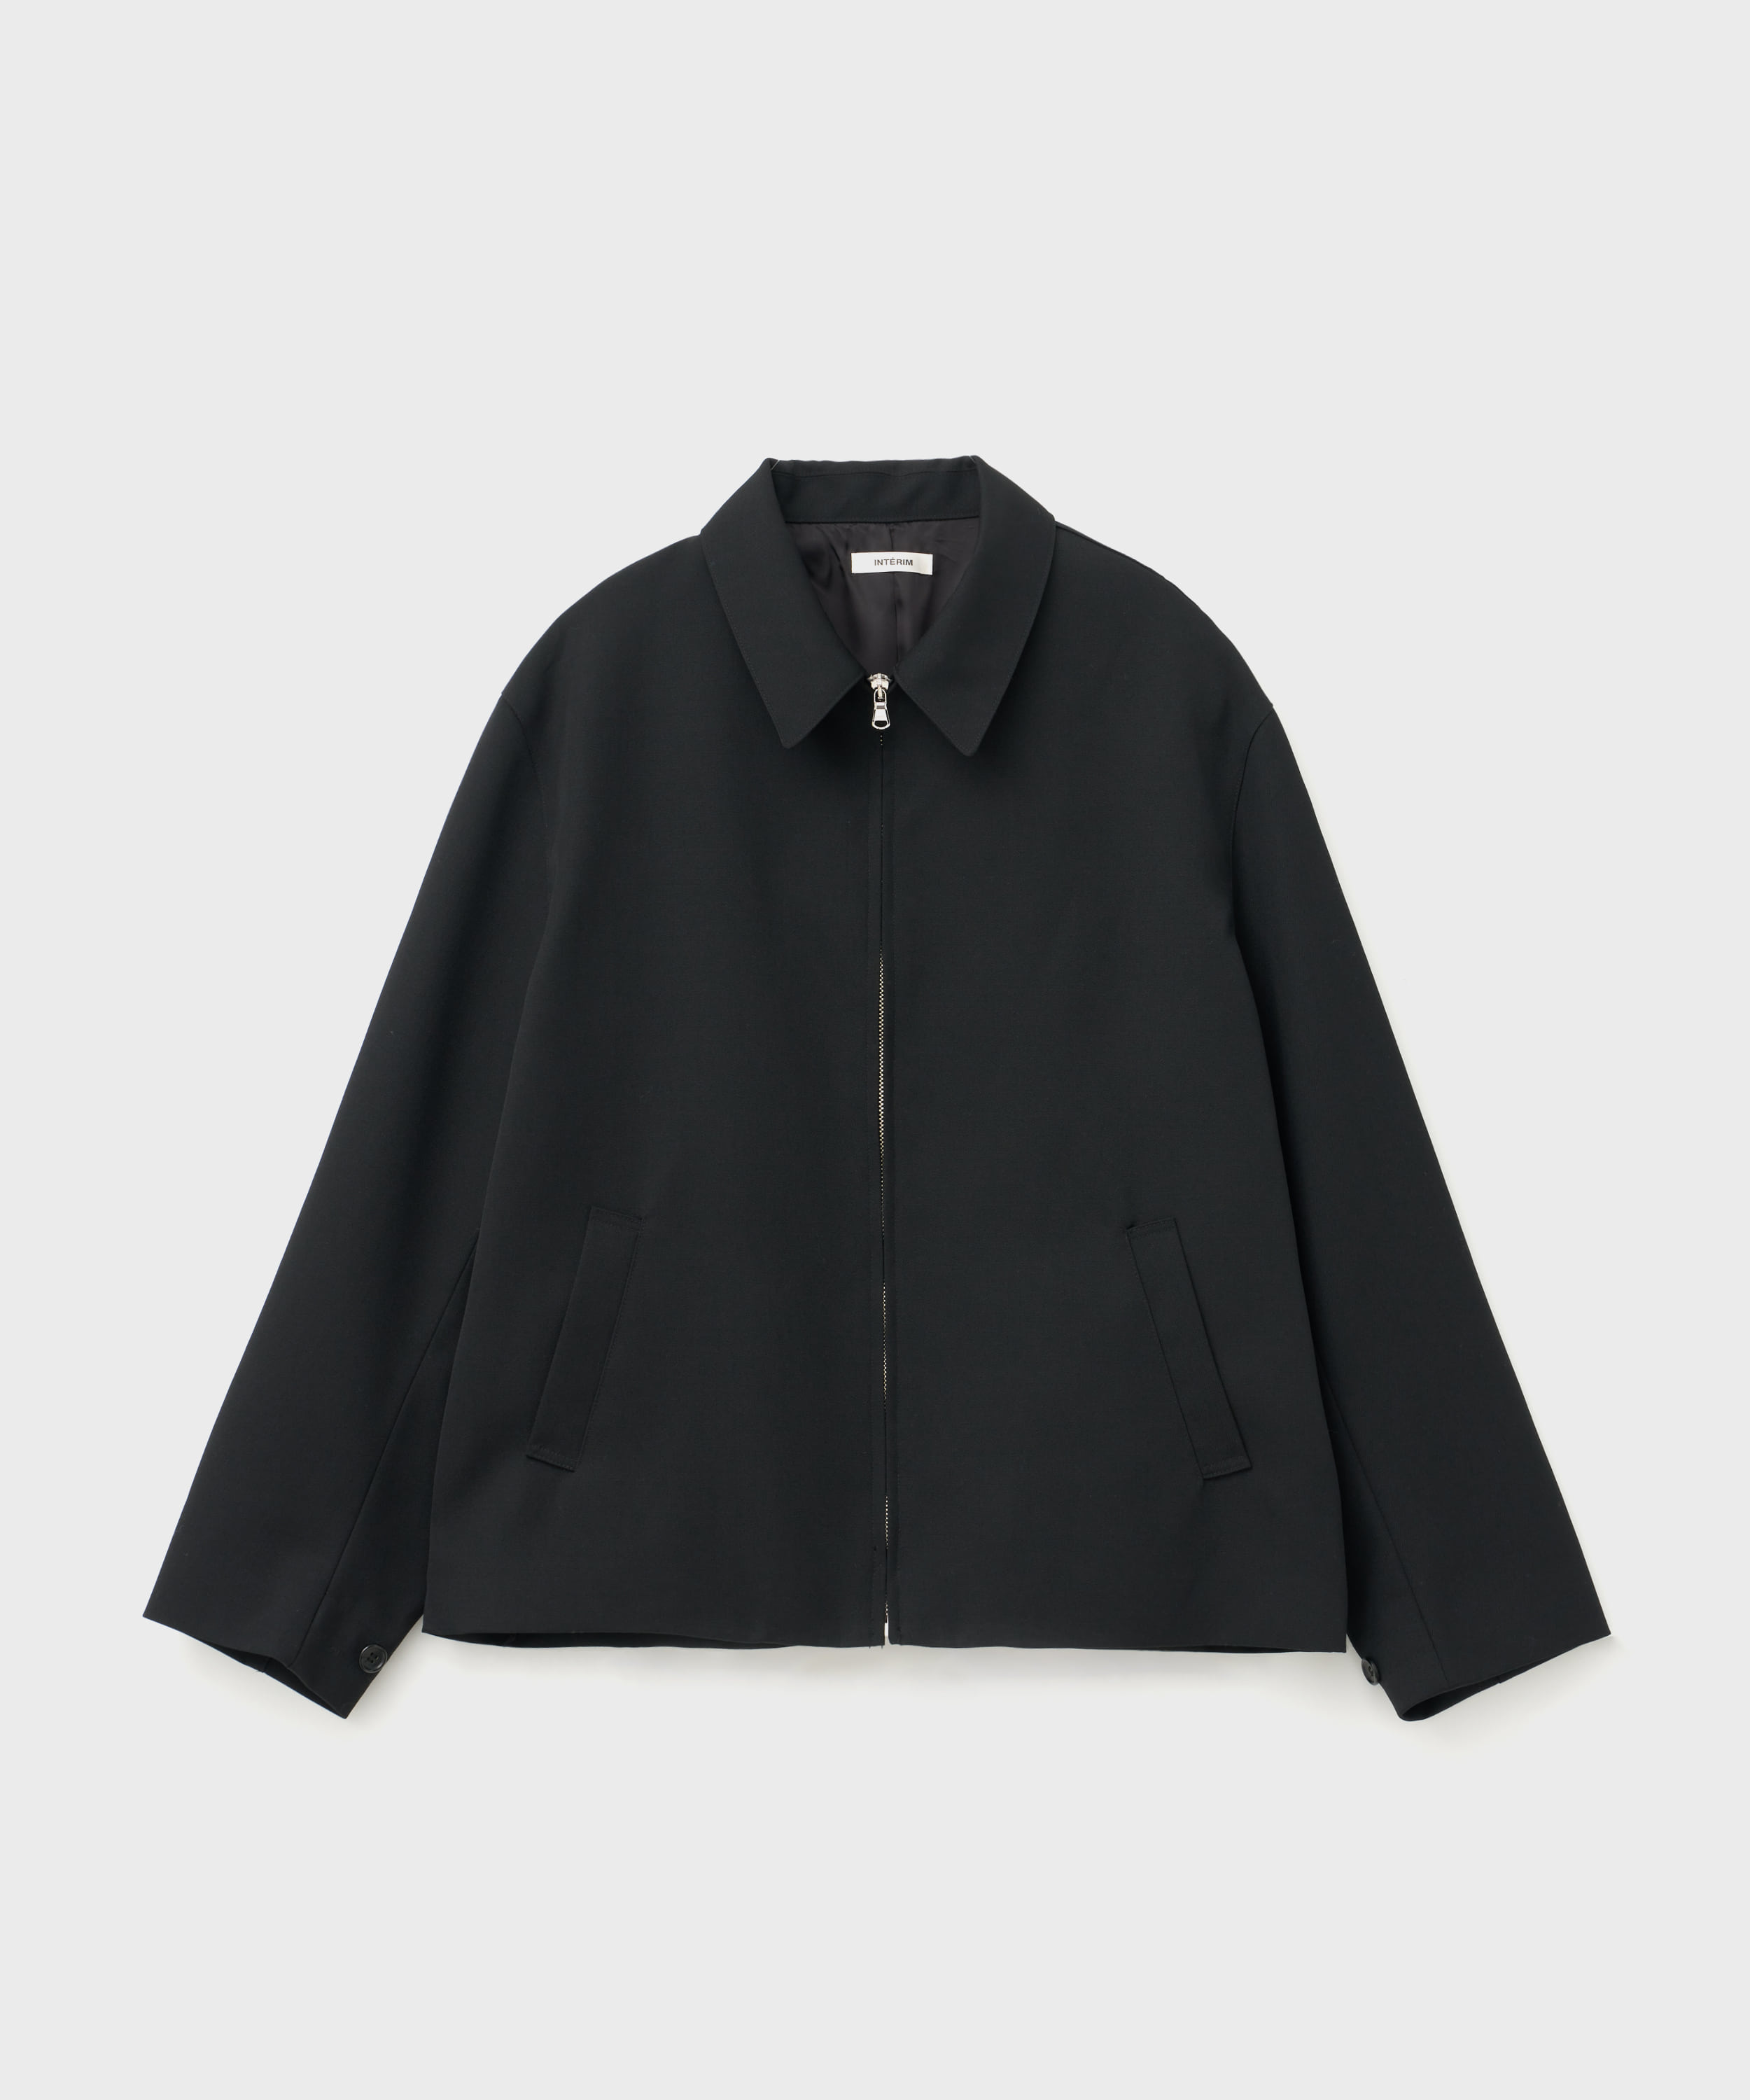 Pure Black Wool Harrington Jacket (Black)